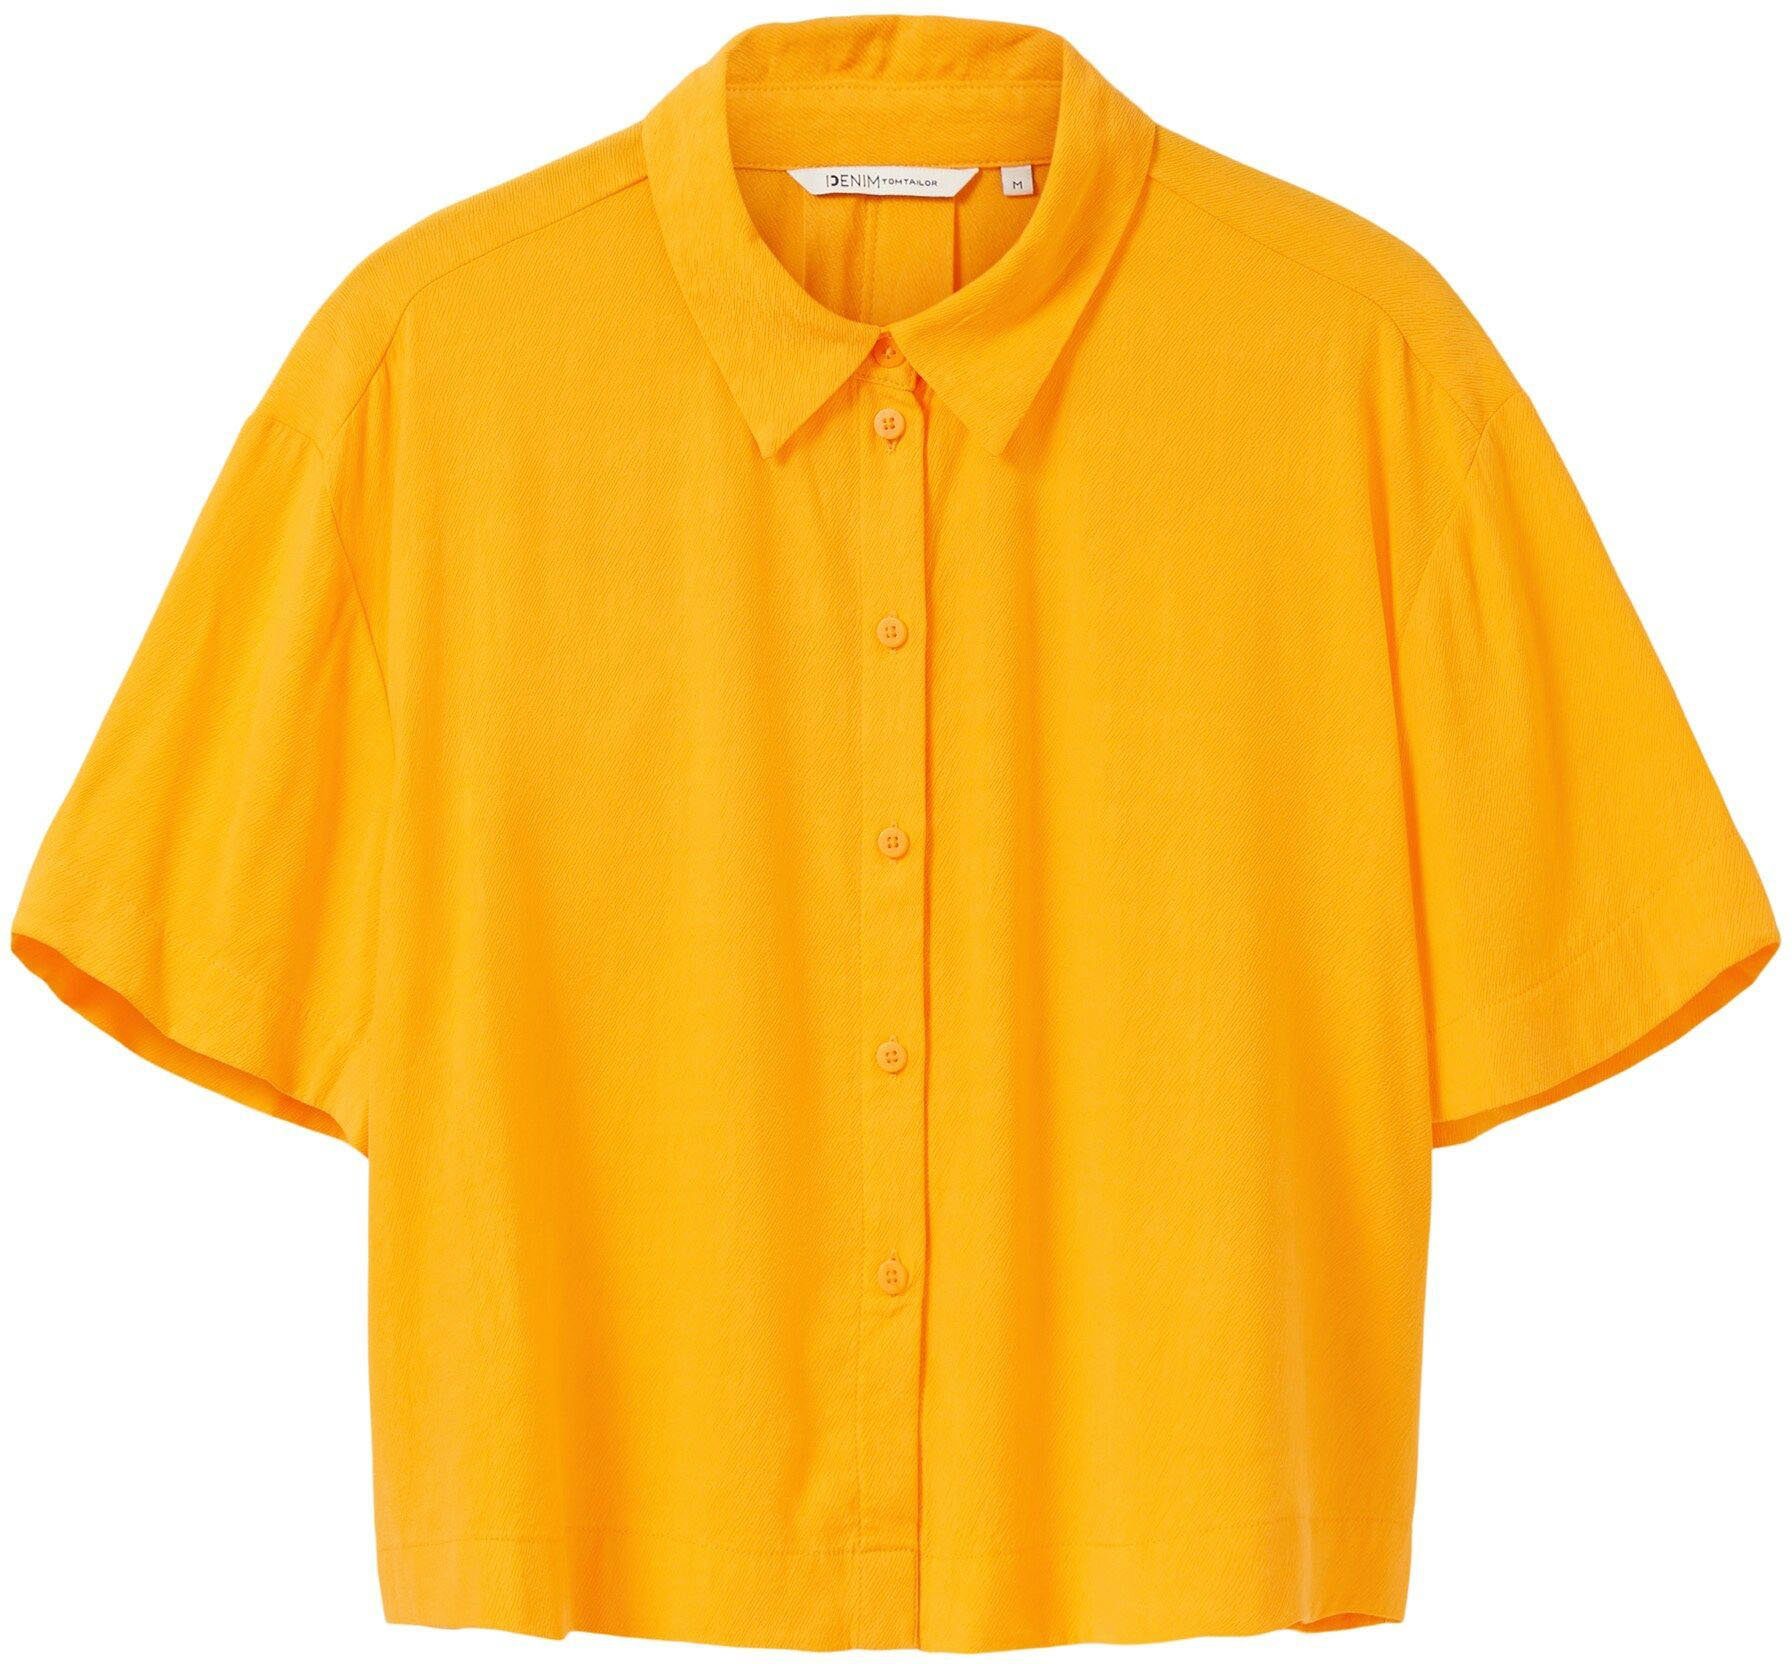 TOM TAILOR Denim Form mango-orange lässig Hemdbluse in kurzer, weiter